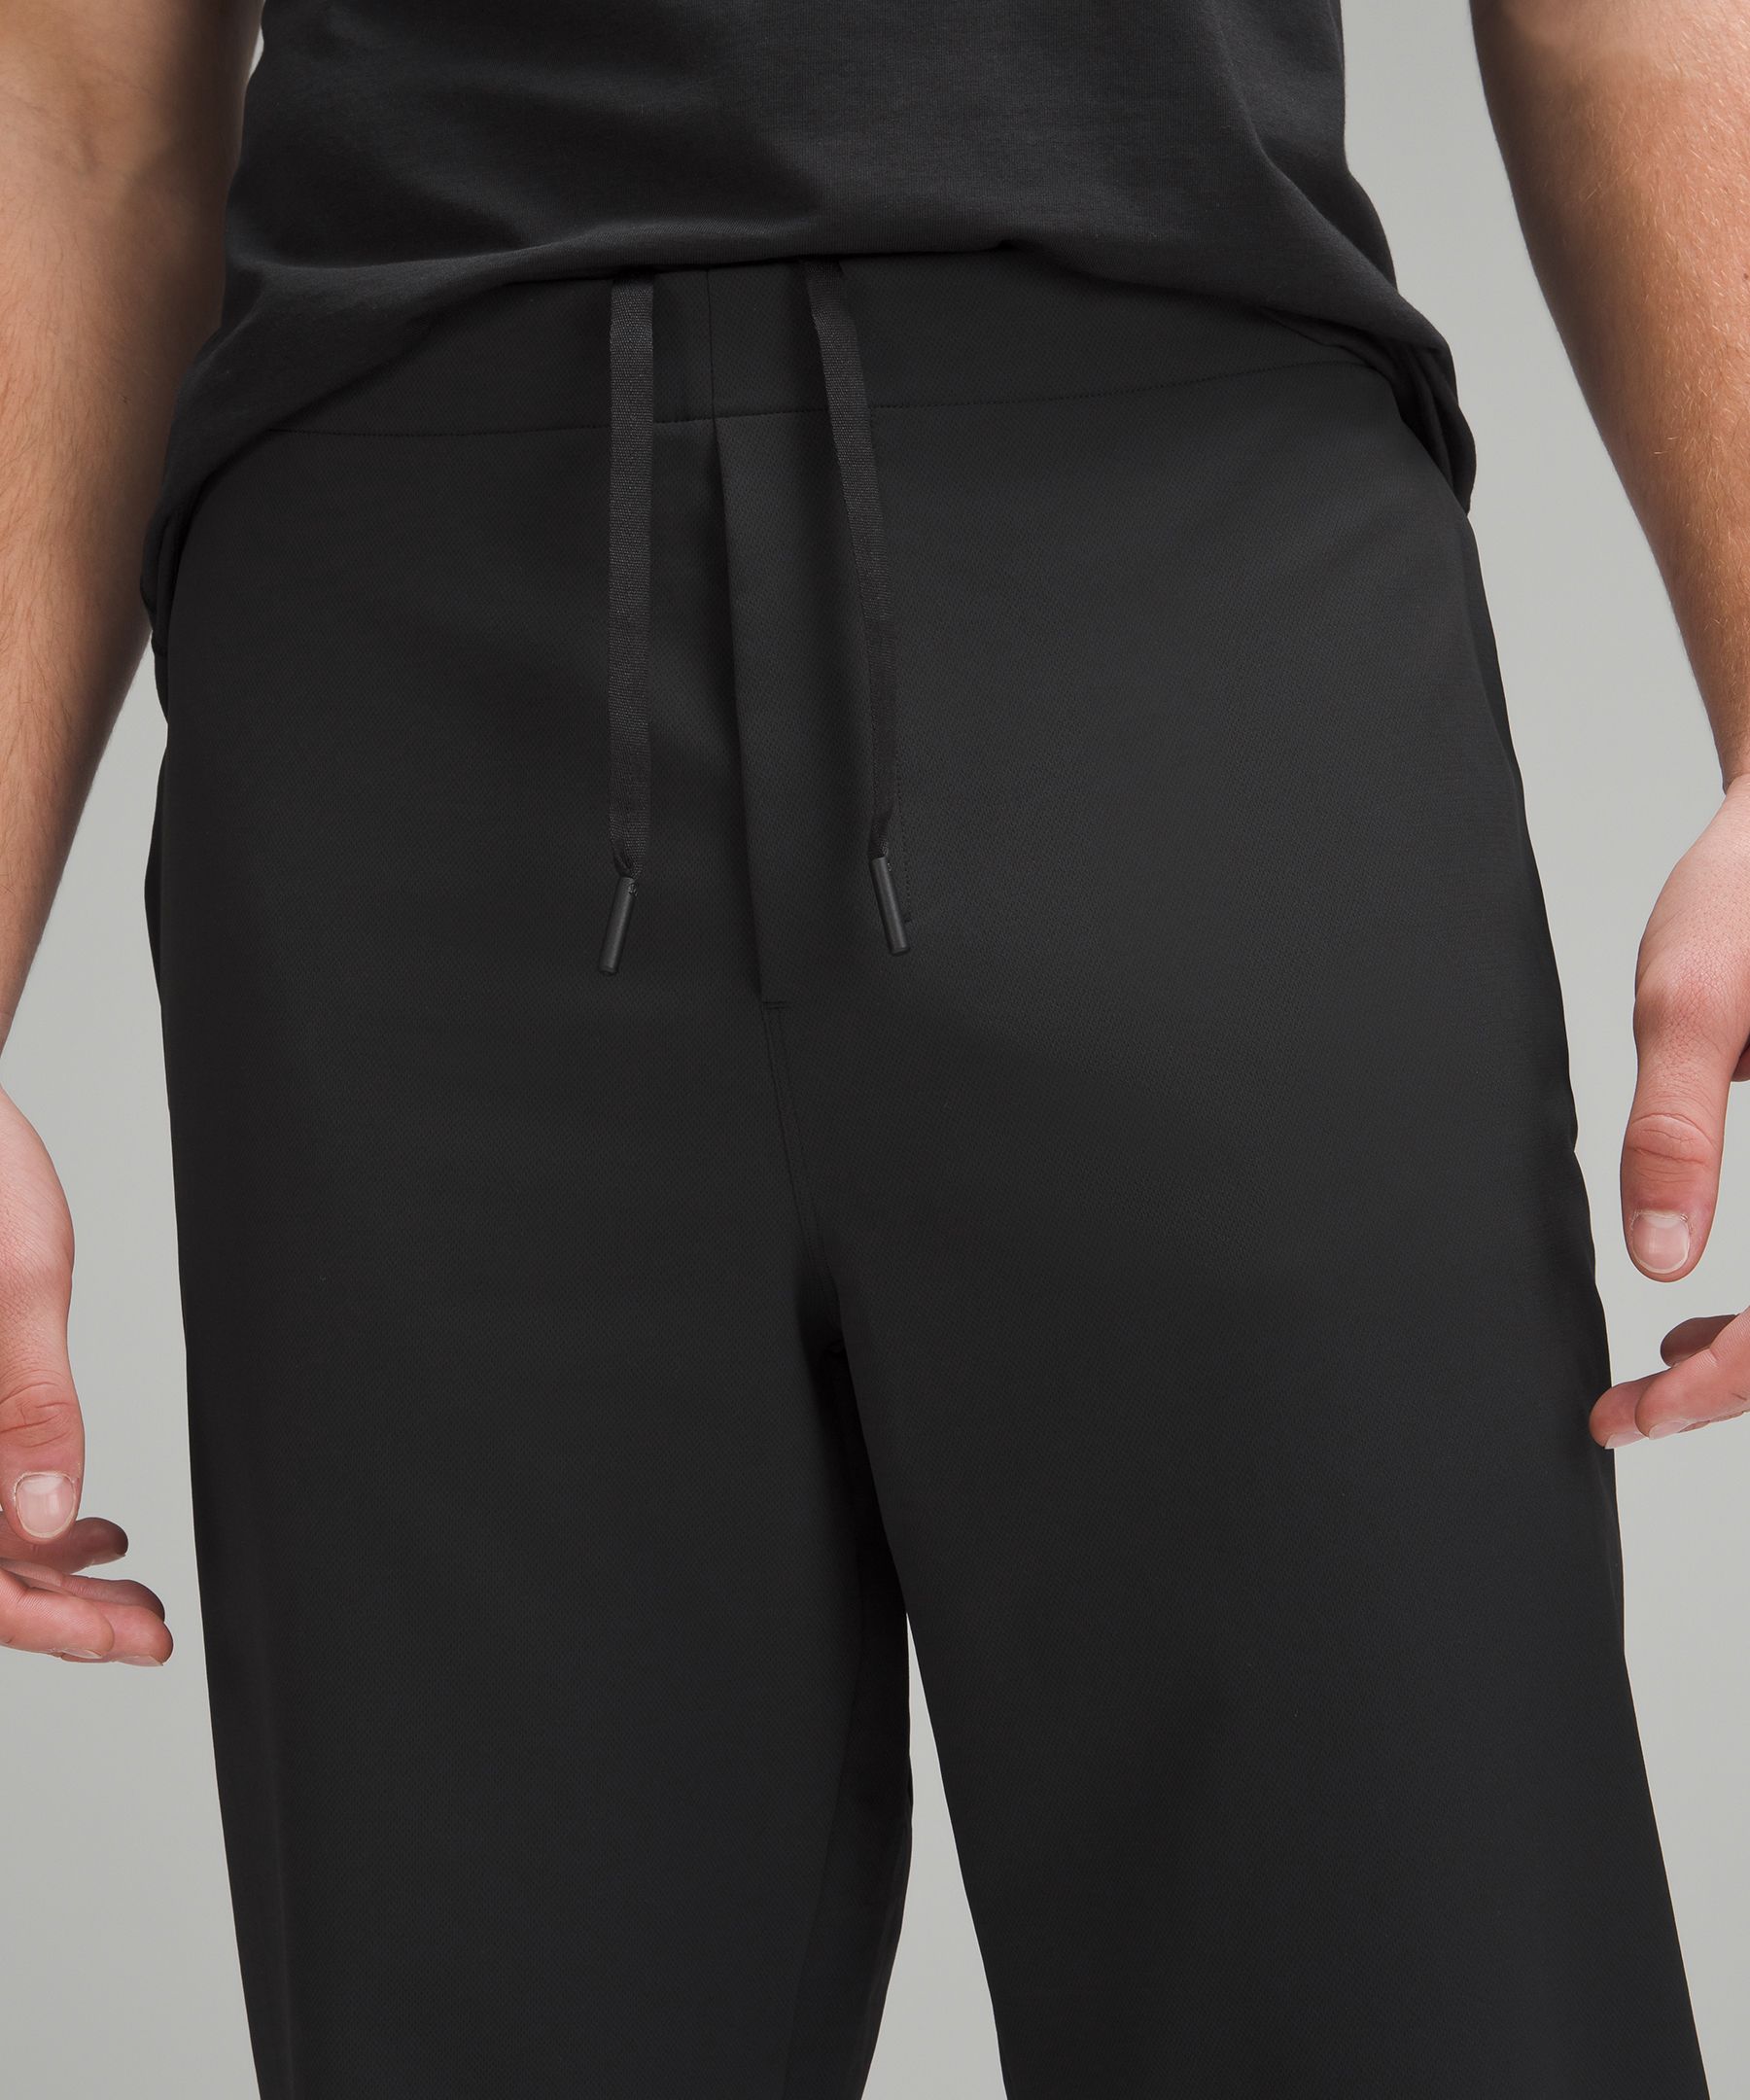 New Venture Trouser *Pique, Men's Joggers